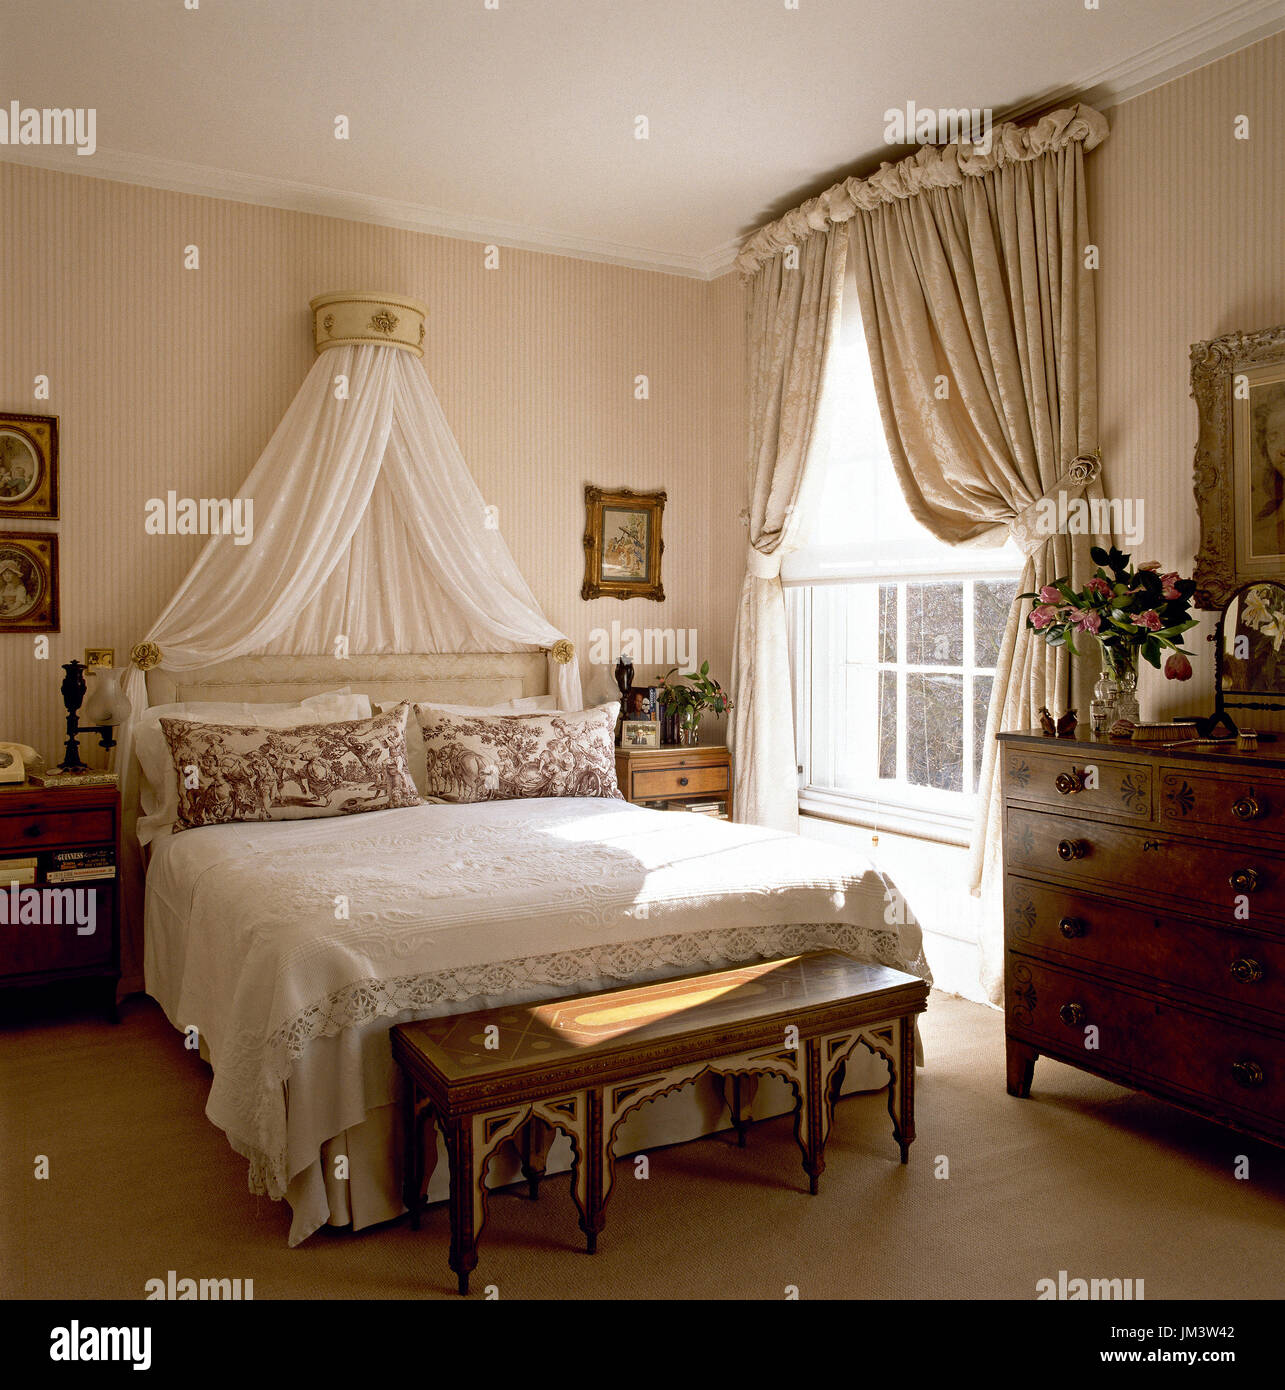 Camera da letto femminile con baldacchino Foto stock - Alamy